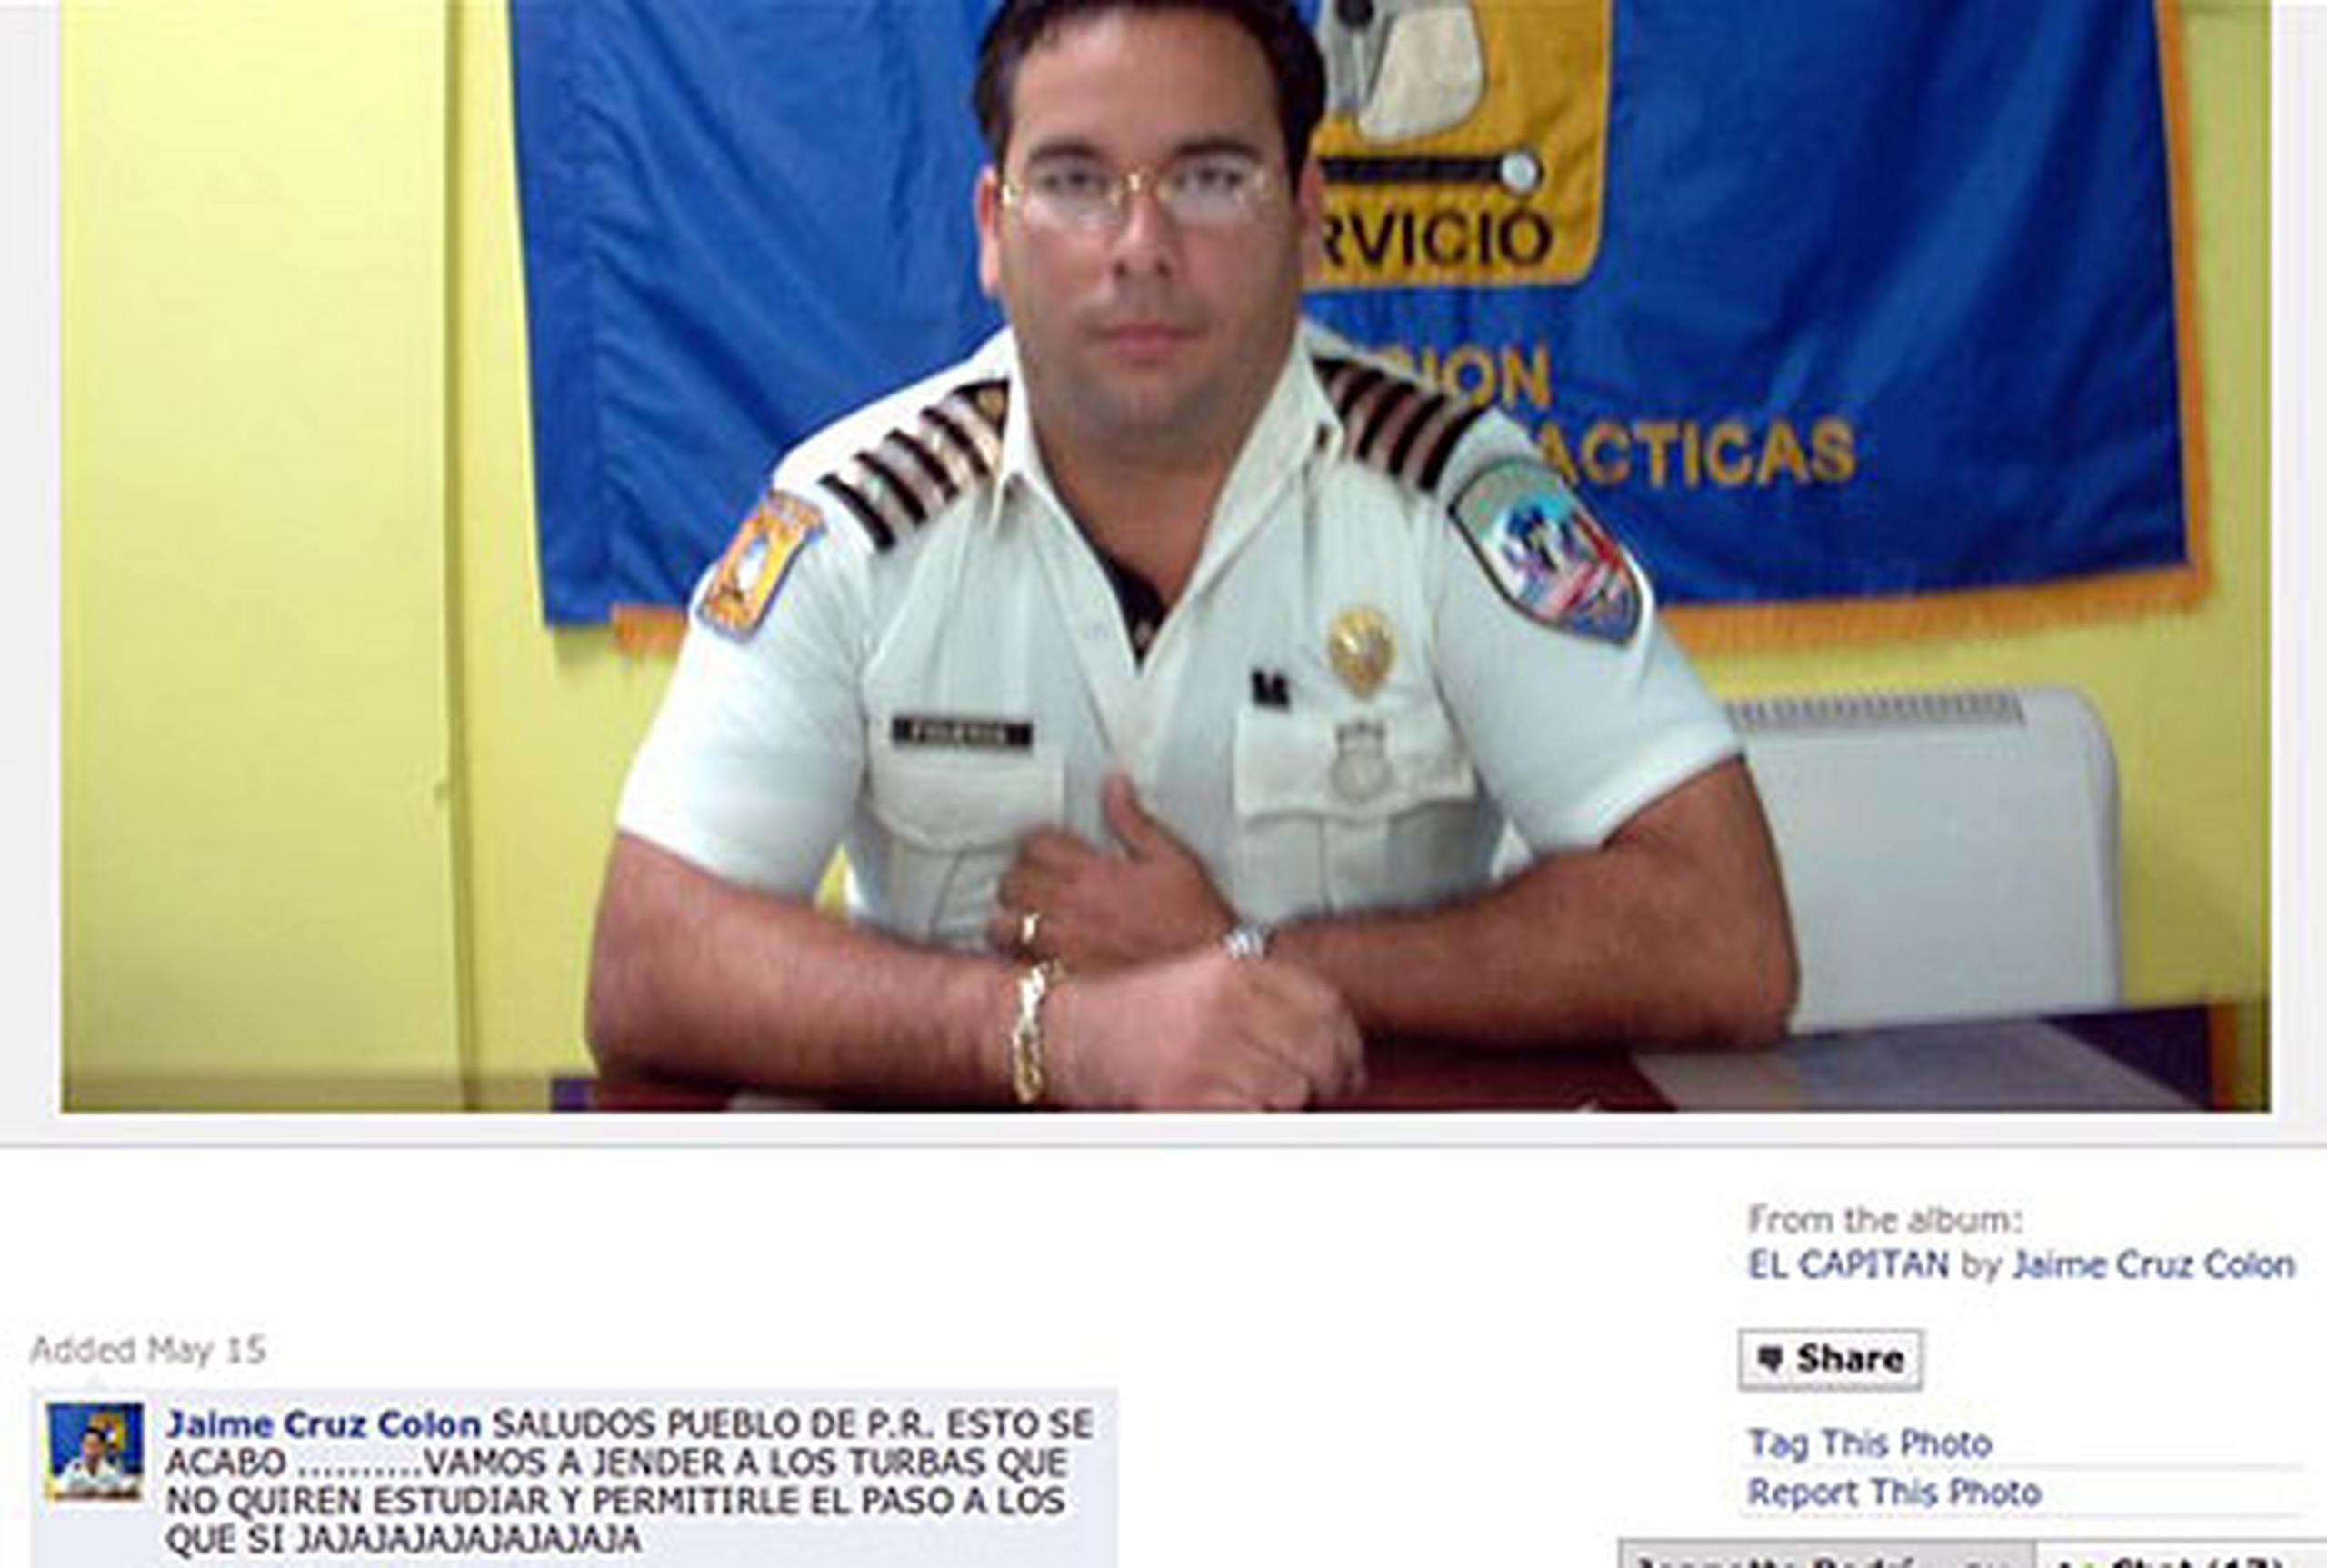 El ahora "realtor" Jaime Cruz Colón asegura que no escribió los estatus en su Facebook.